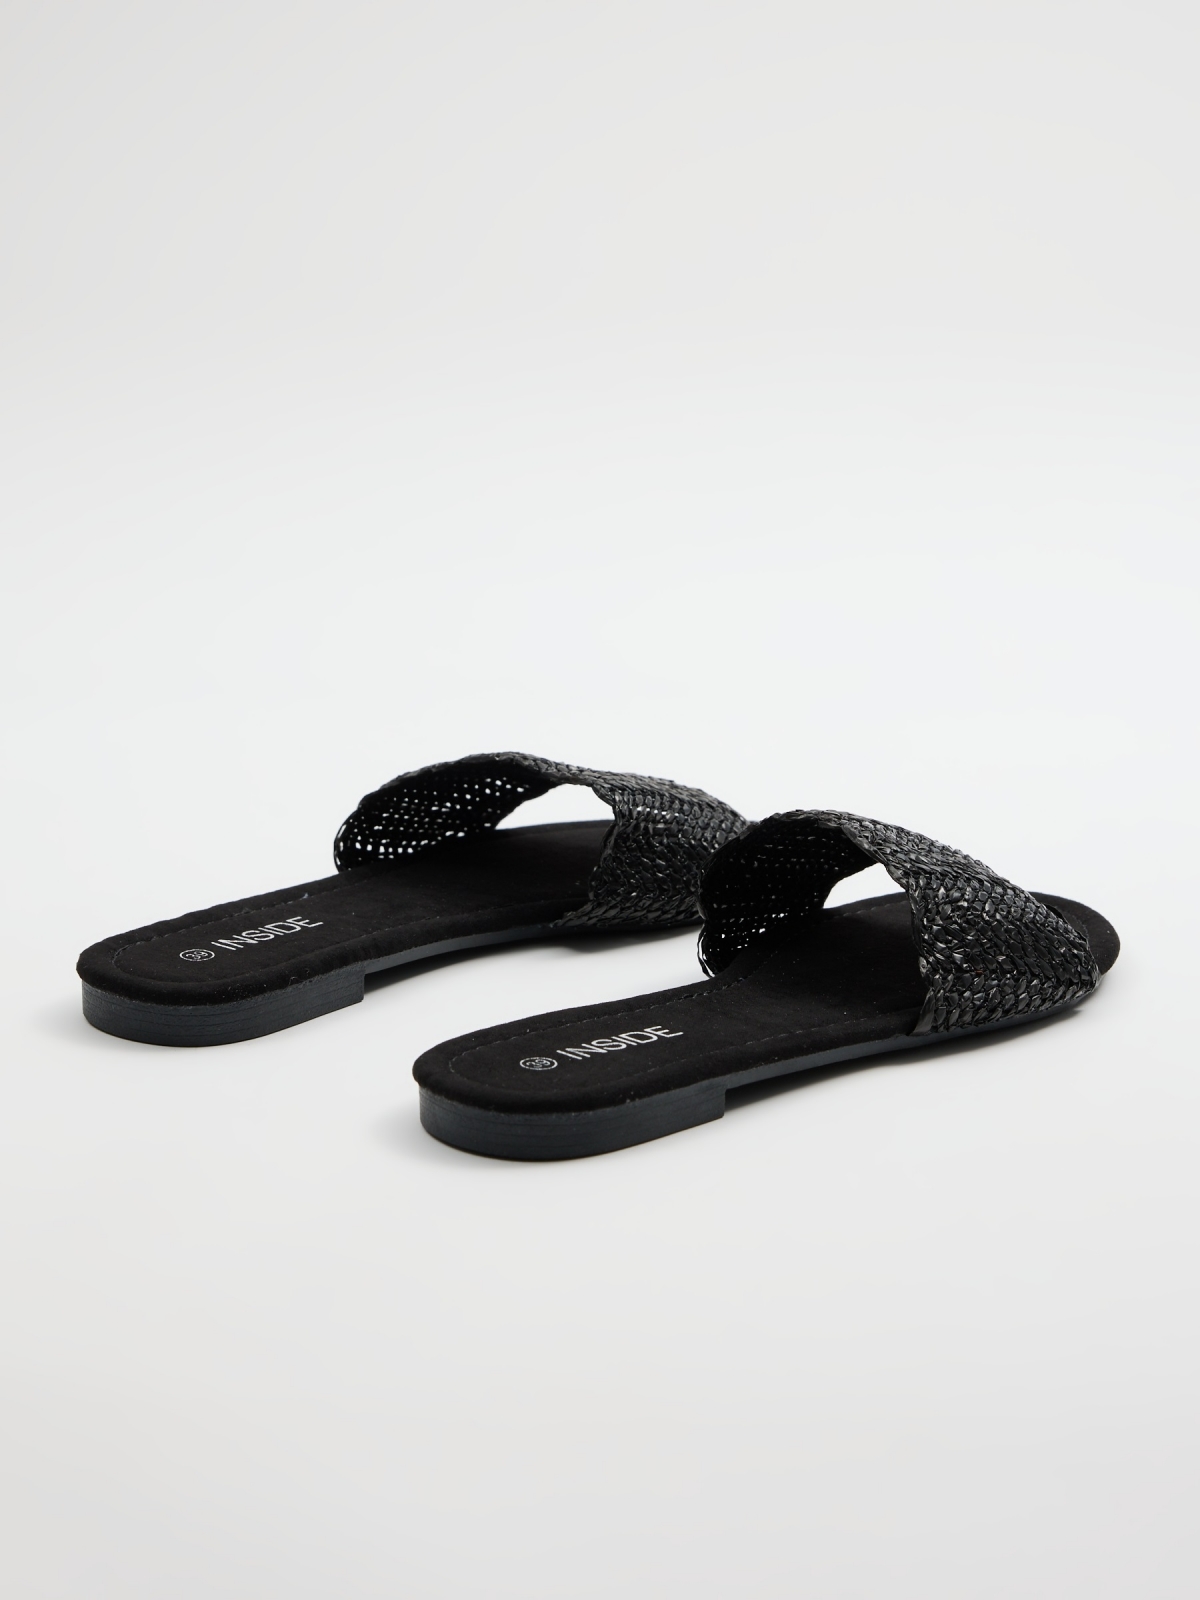 Ráfia natural entrelaçada de sandálias preto vista traseira 45º